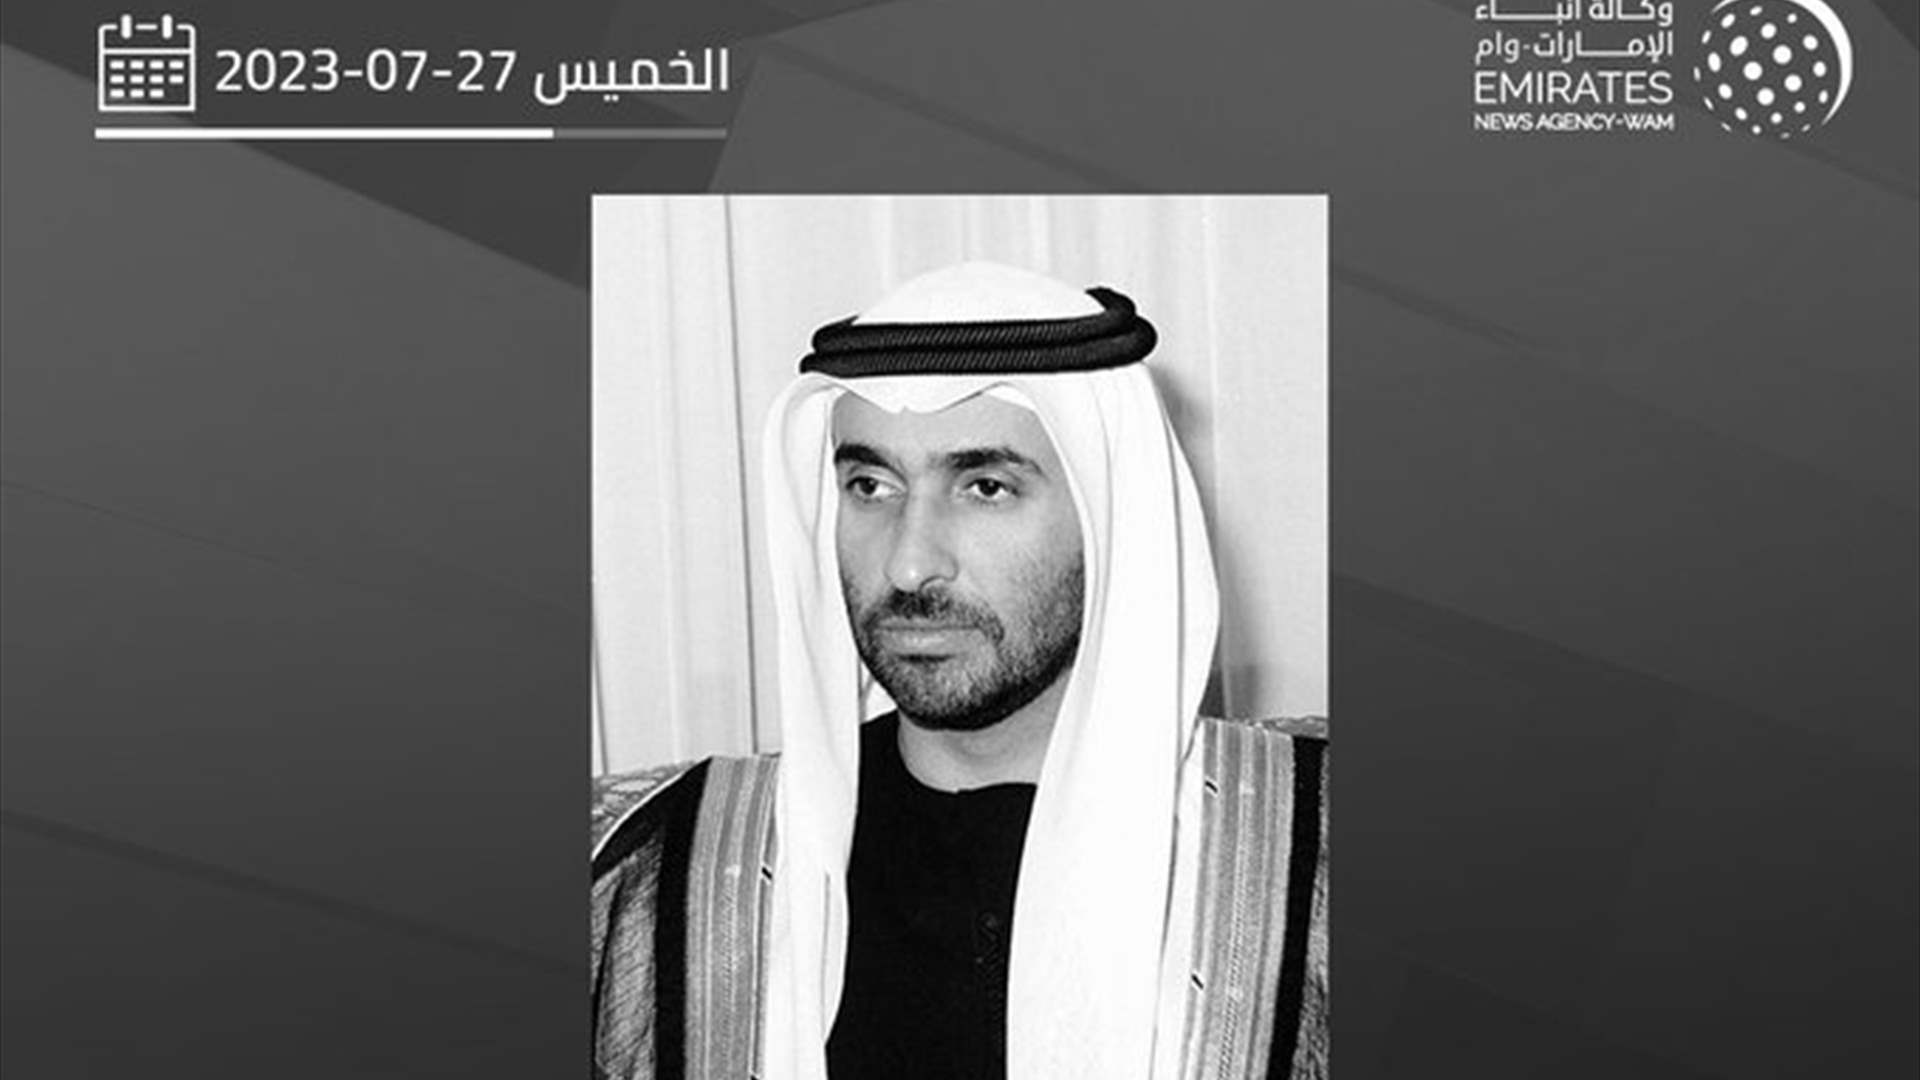 وفاة شقيق رئيس الإمارات.. حداد رسمي وتنكيس اعلام لثلاثة ايام